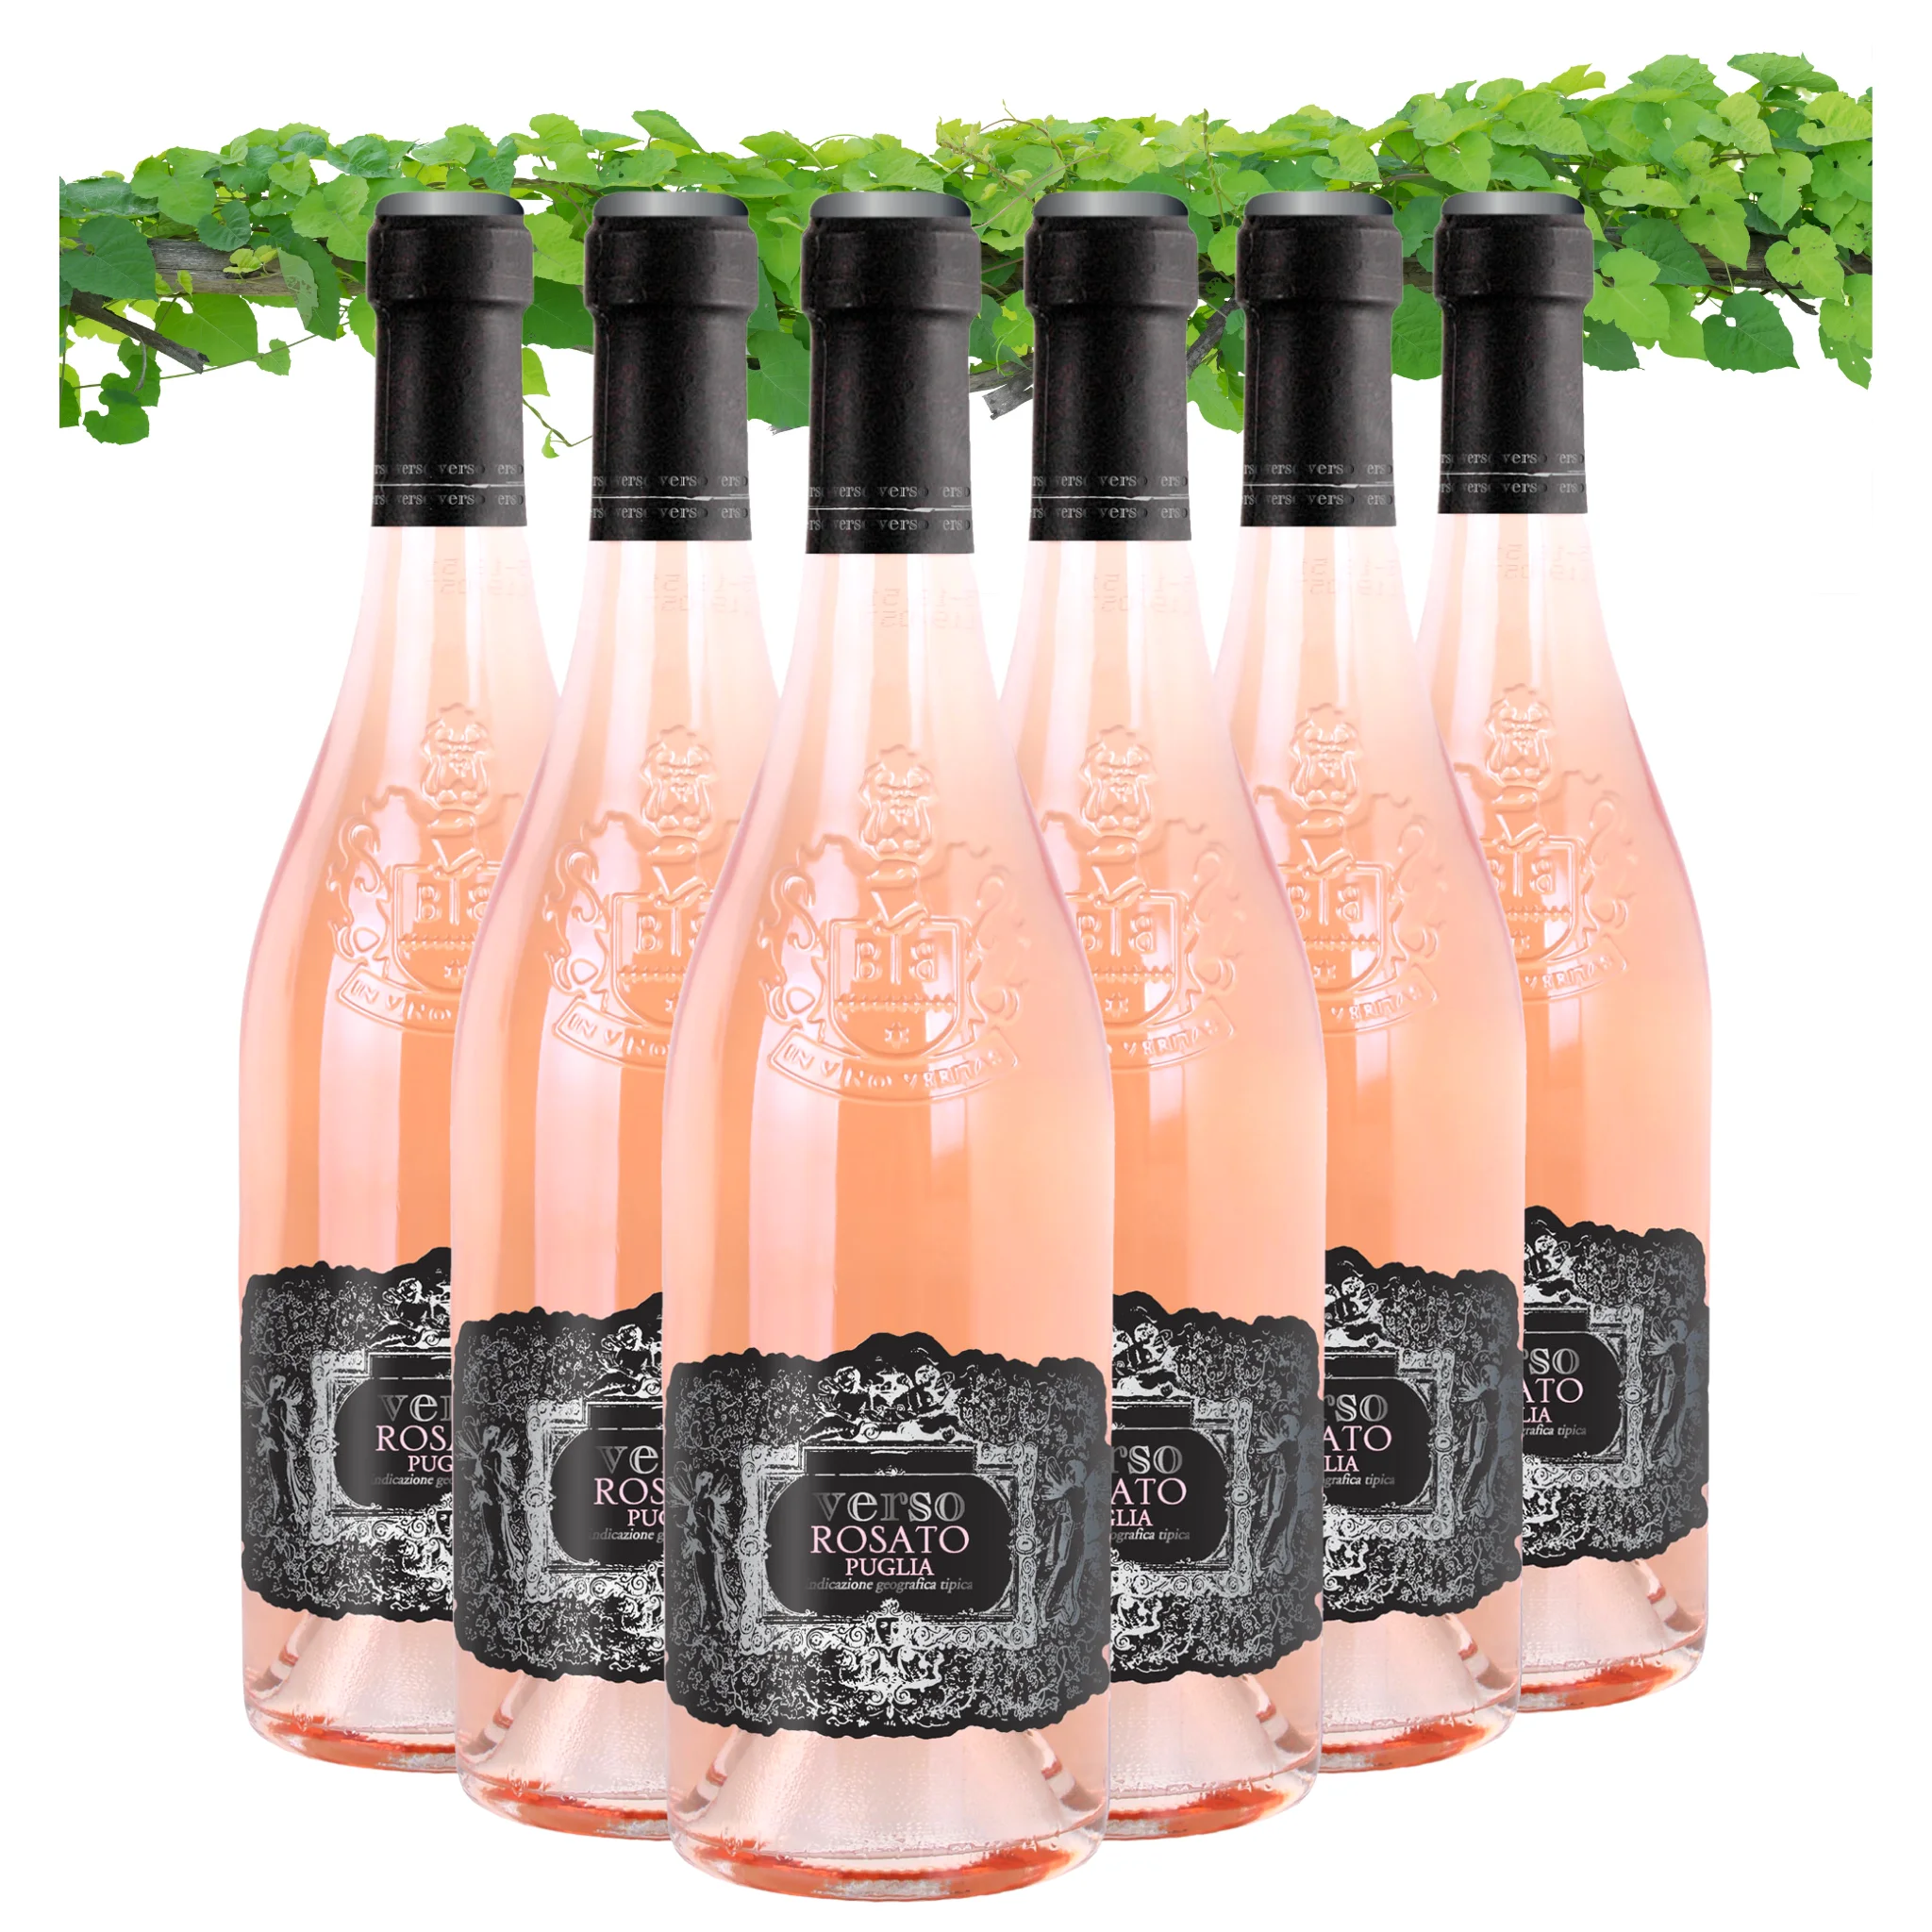 В итальянском стиле розовое вино-Rosato, IGT Verso Rosato-милое розовое вино-бутылки 750 мл спирта 12.5% для экспорта